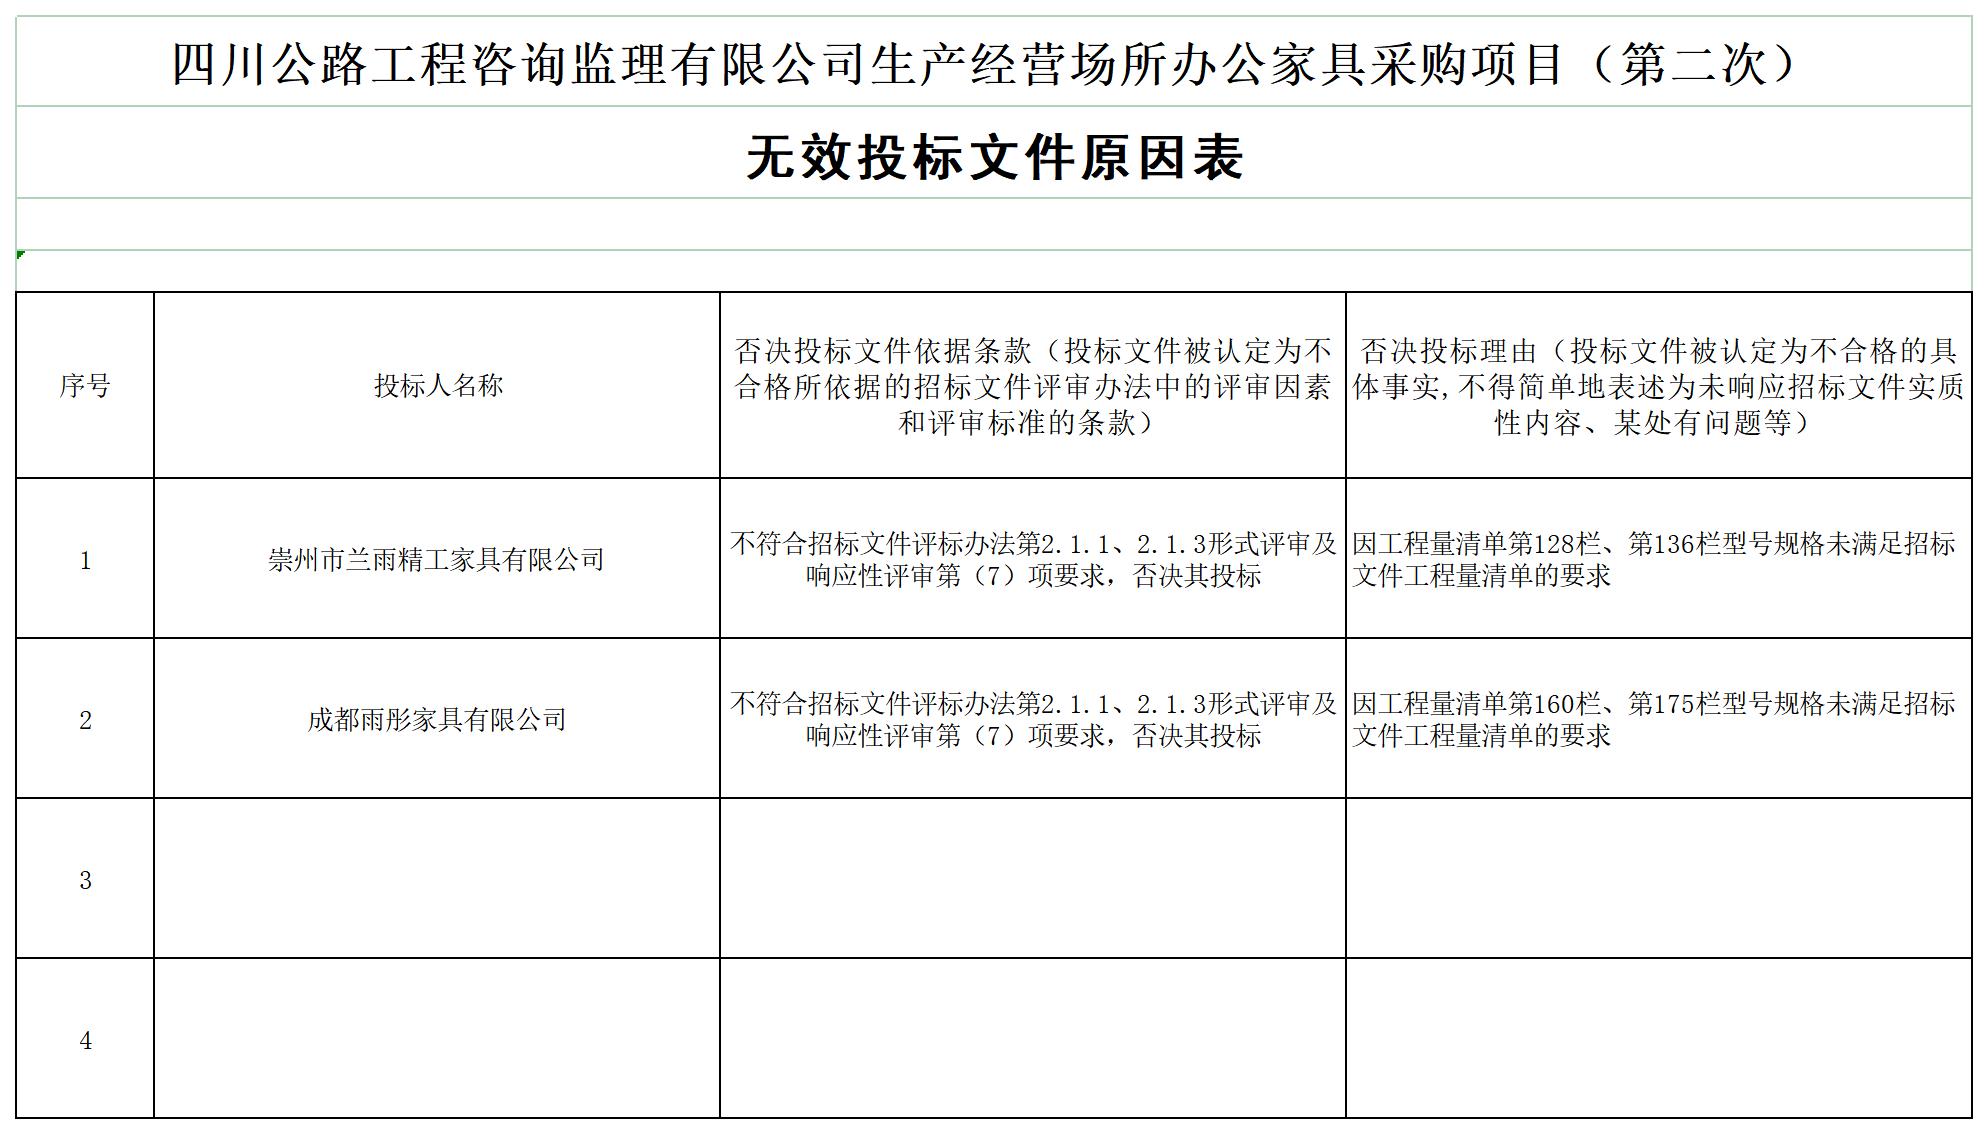 ld乐动·体育（中国）官方网站生产经营场所办公家具采购项目（第二次）中标候选人及无效投标文件原因_A1E9.jpg